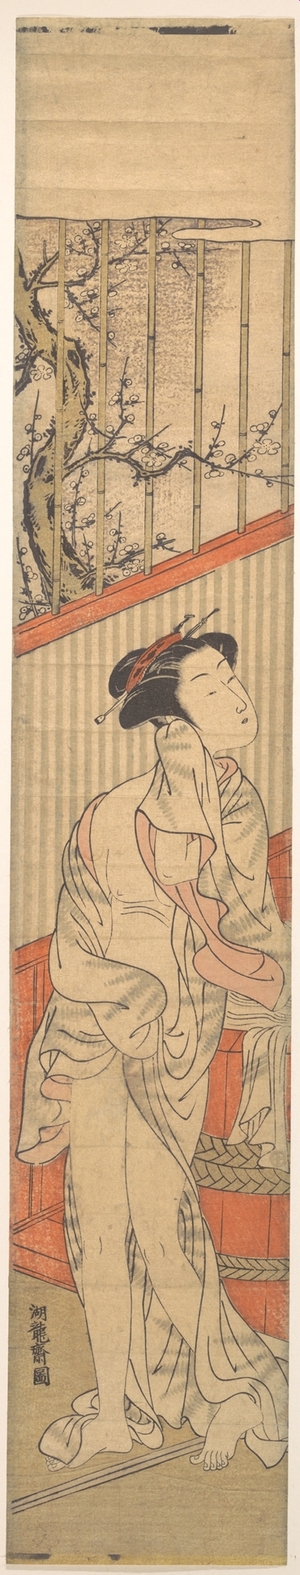 磯田湖龍齋: Girl Drying Herself after Her Bath - メトロポリタン美術館